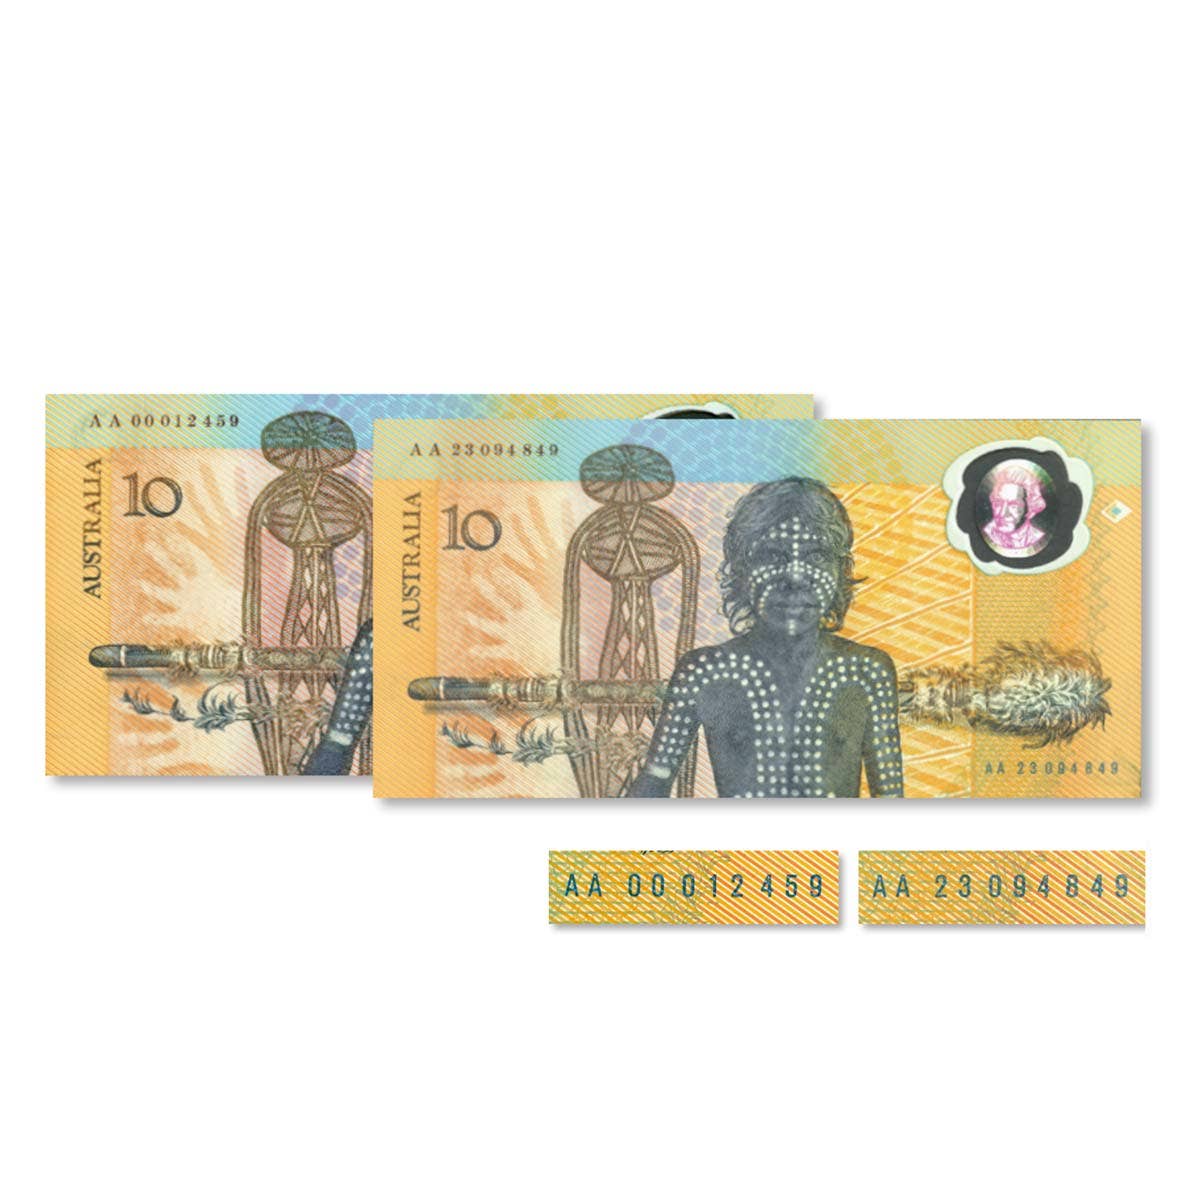 1988 $10 Bicentennial Overprint AA00 First Prefix & AA23 Last Prefix Banknote Pair Uncirculated